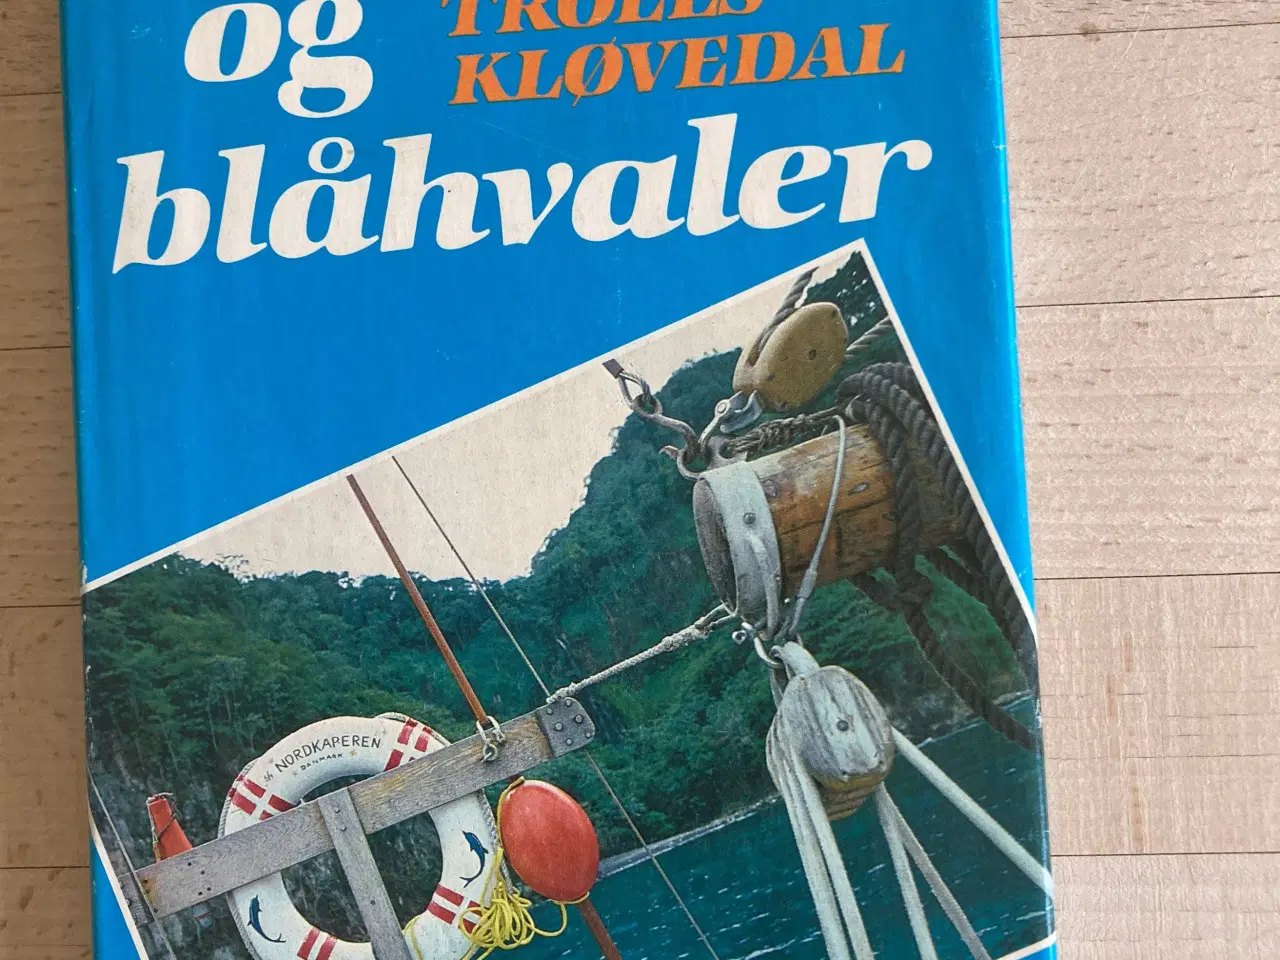 Billede 1 - Bidevind og blåhvaler, Troels Kløvedal